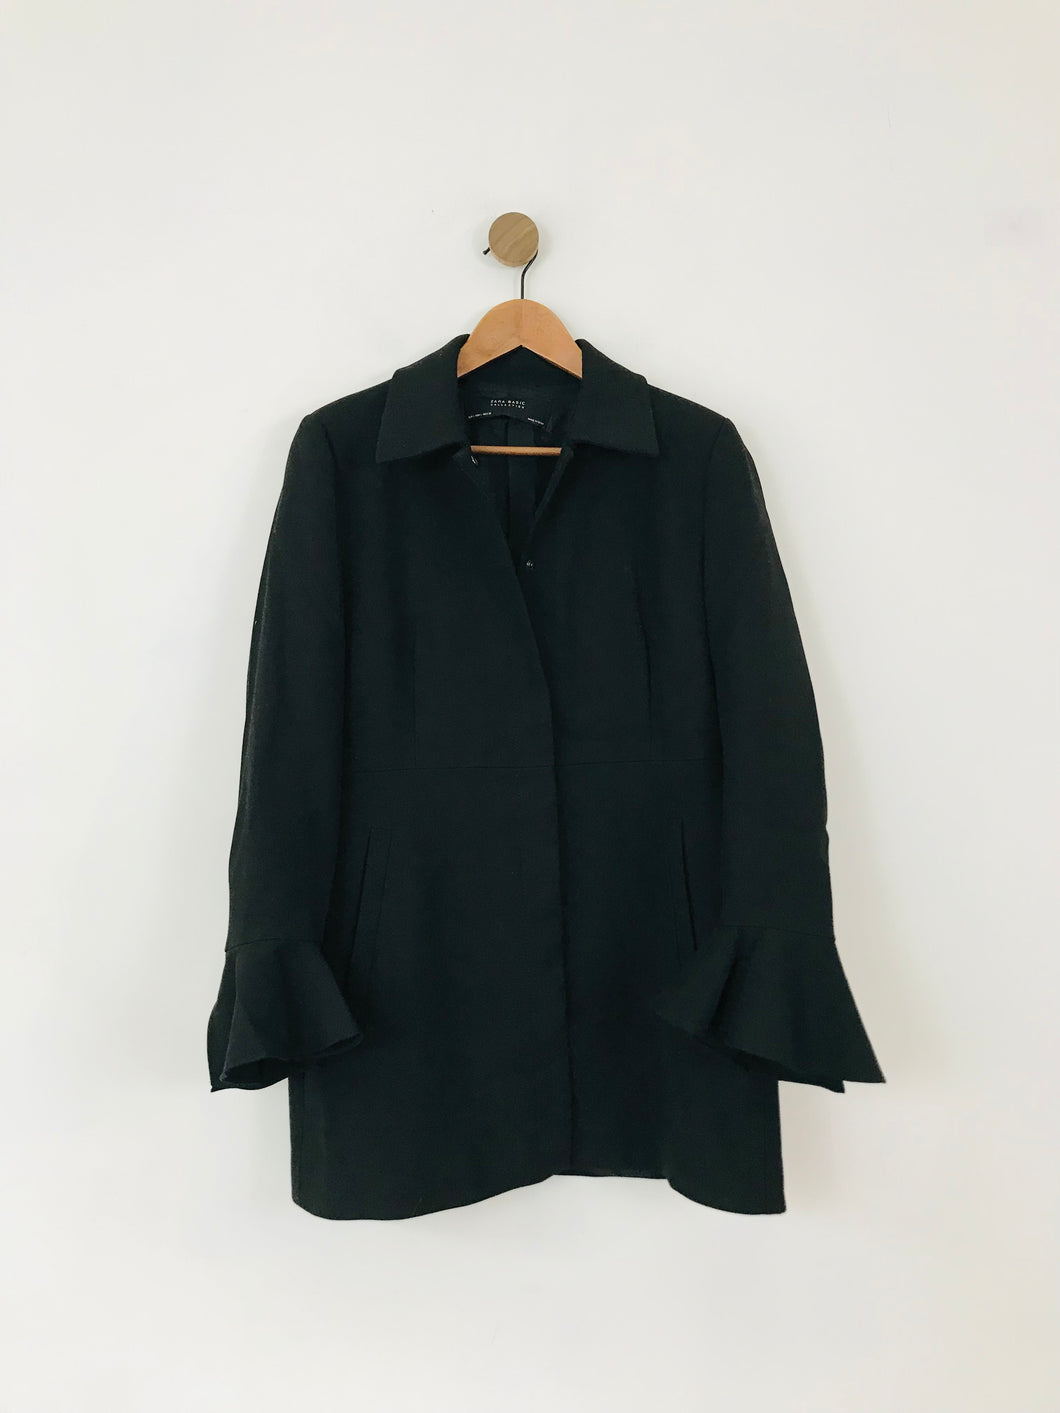 Zara Women's Longline Bell Sleeve Blazer Jacket | L UK14 | Black